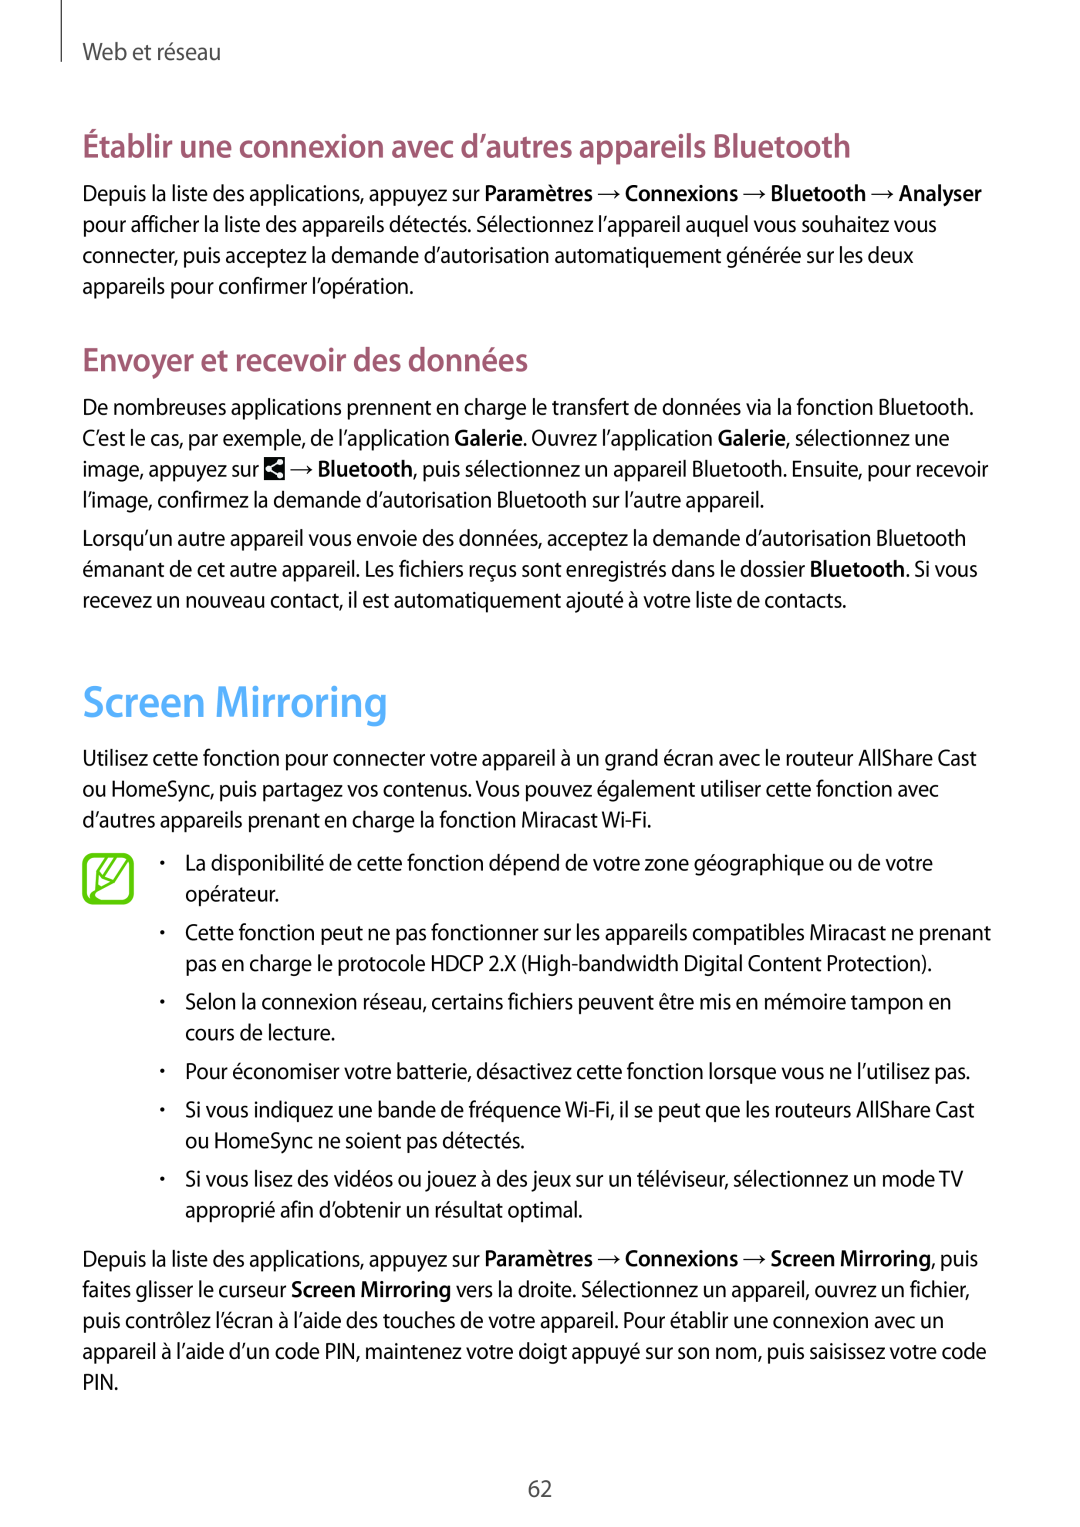 Samsung SM-T320NZWAXEF manual Screen Mirroring, Établir une connexion avec d’autres appareils Bluetooth, Web et réseau 